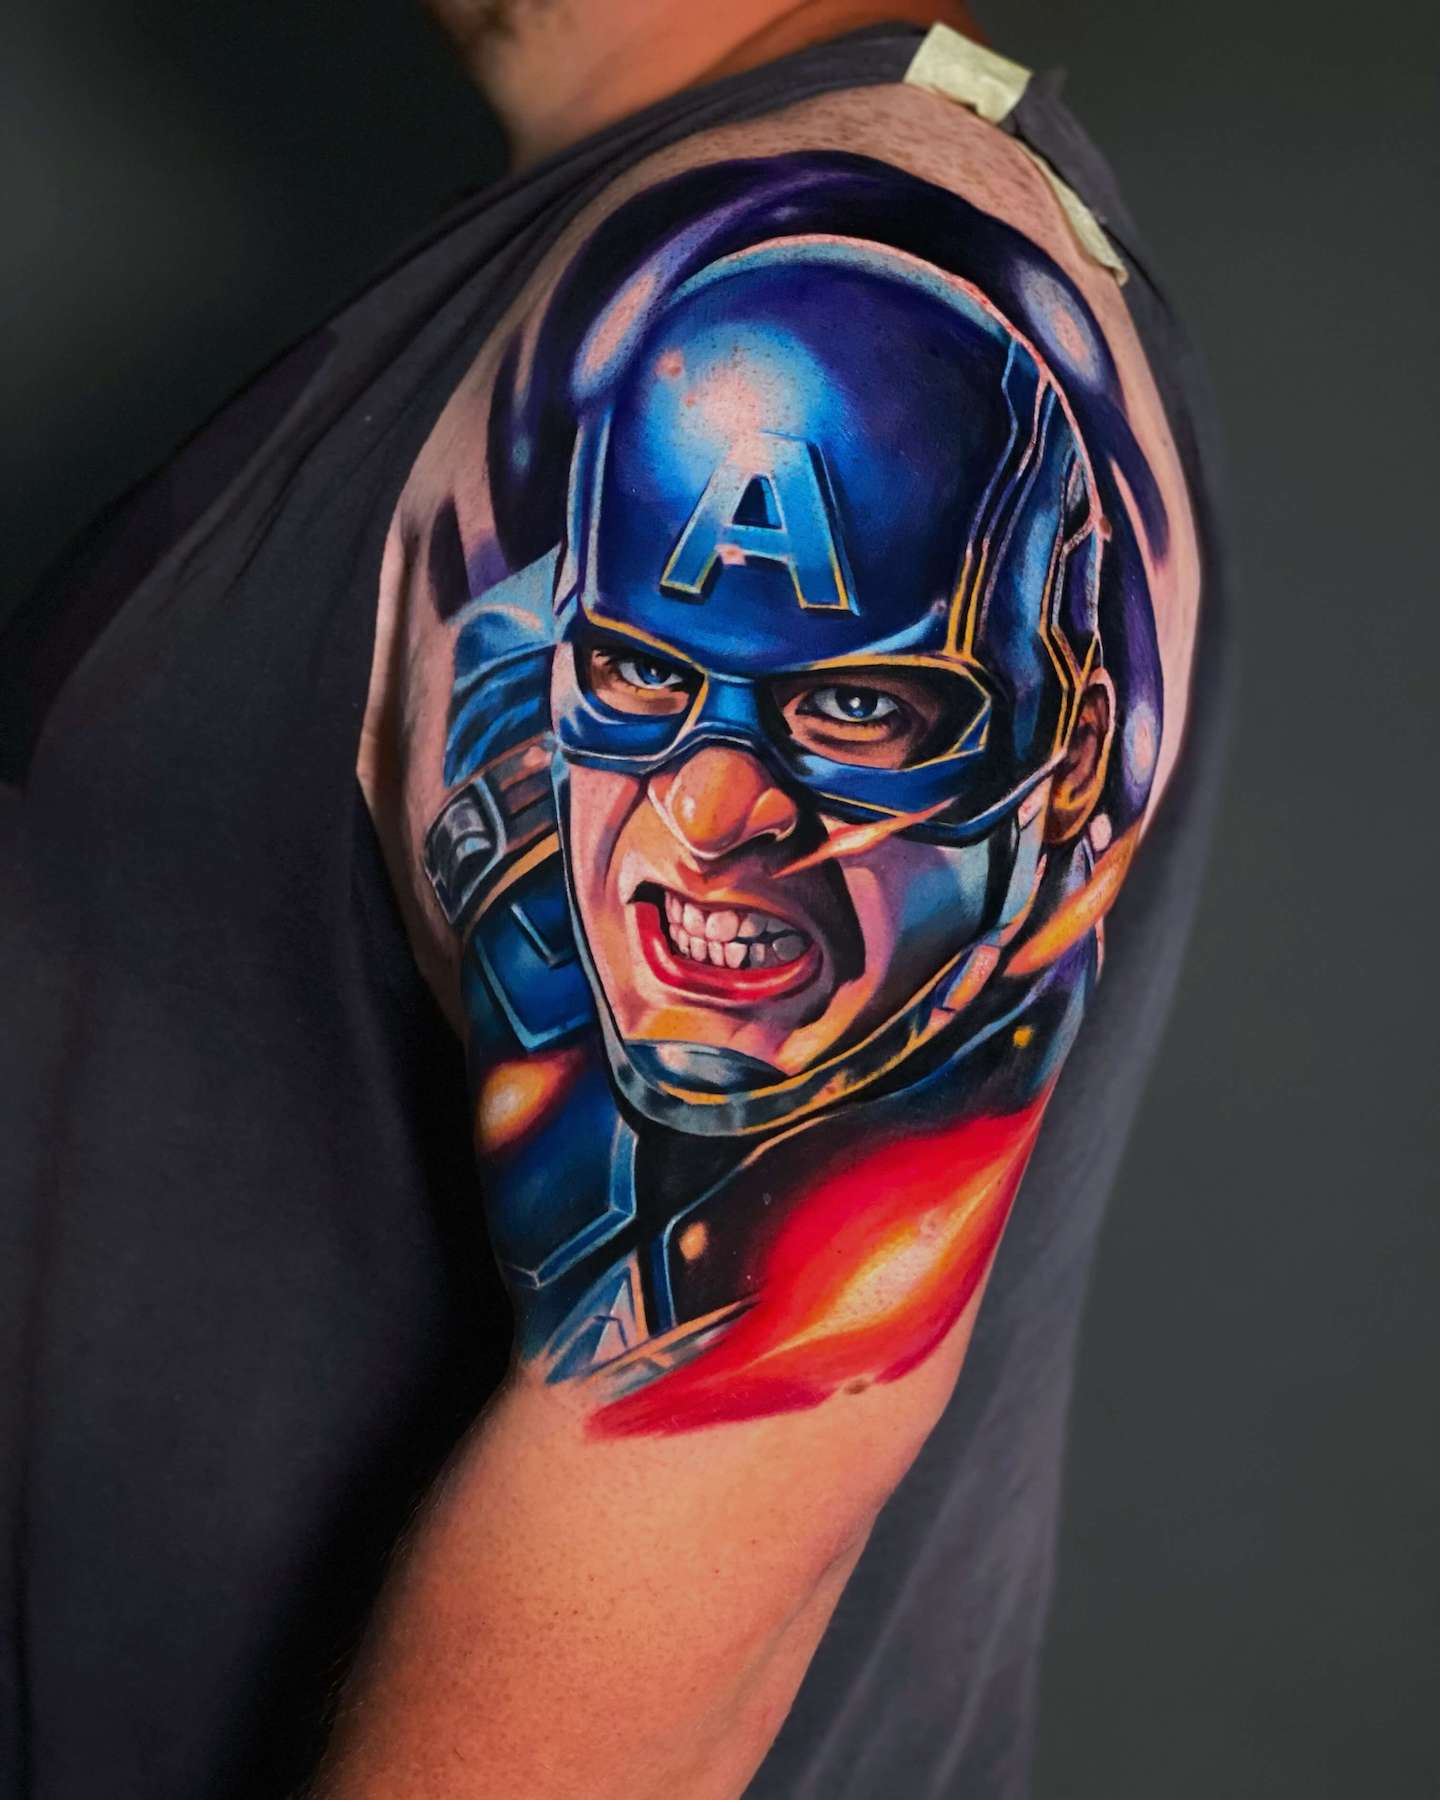 Kejti Dumka - tatuaż Kapitan Ameryka